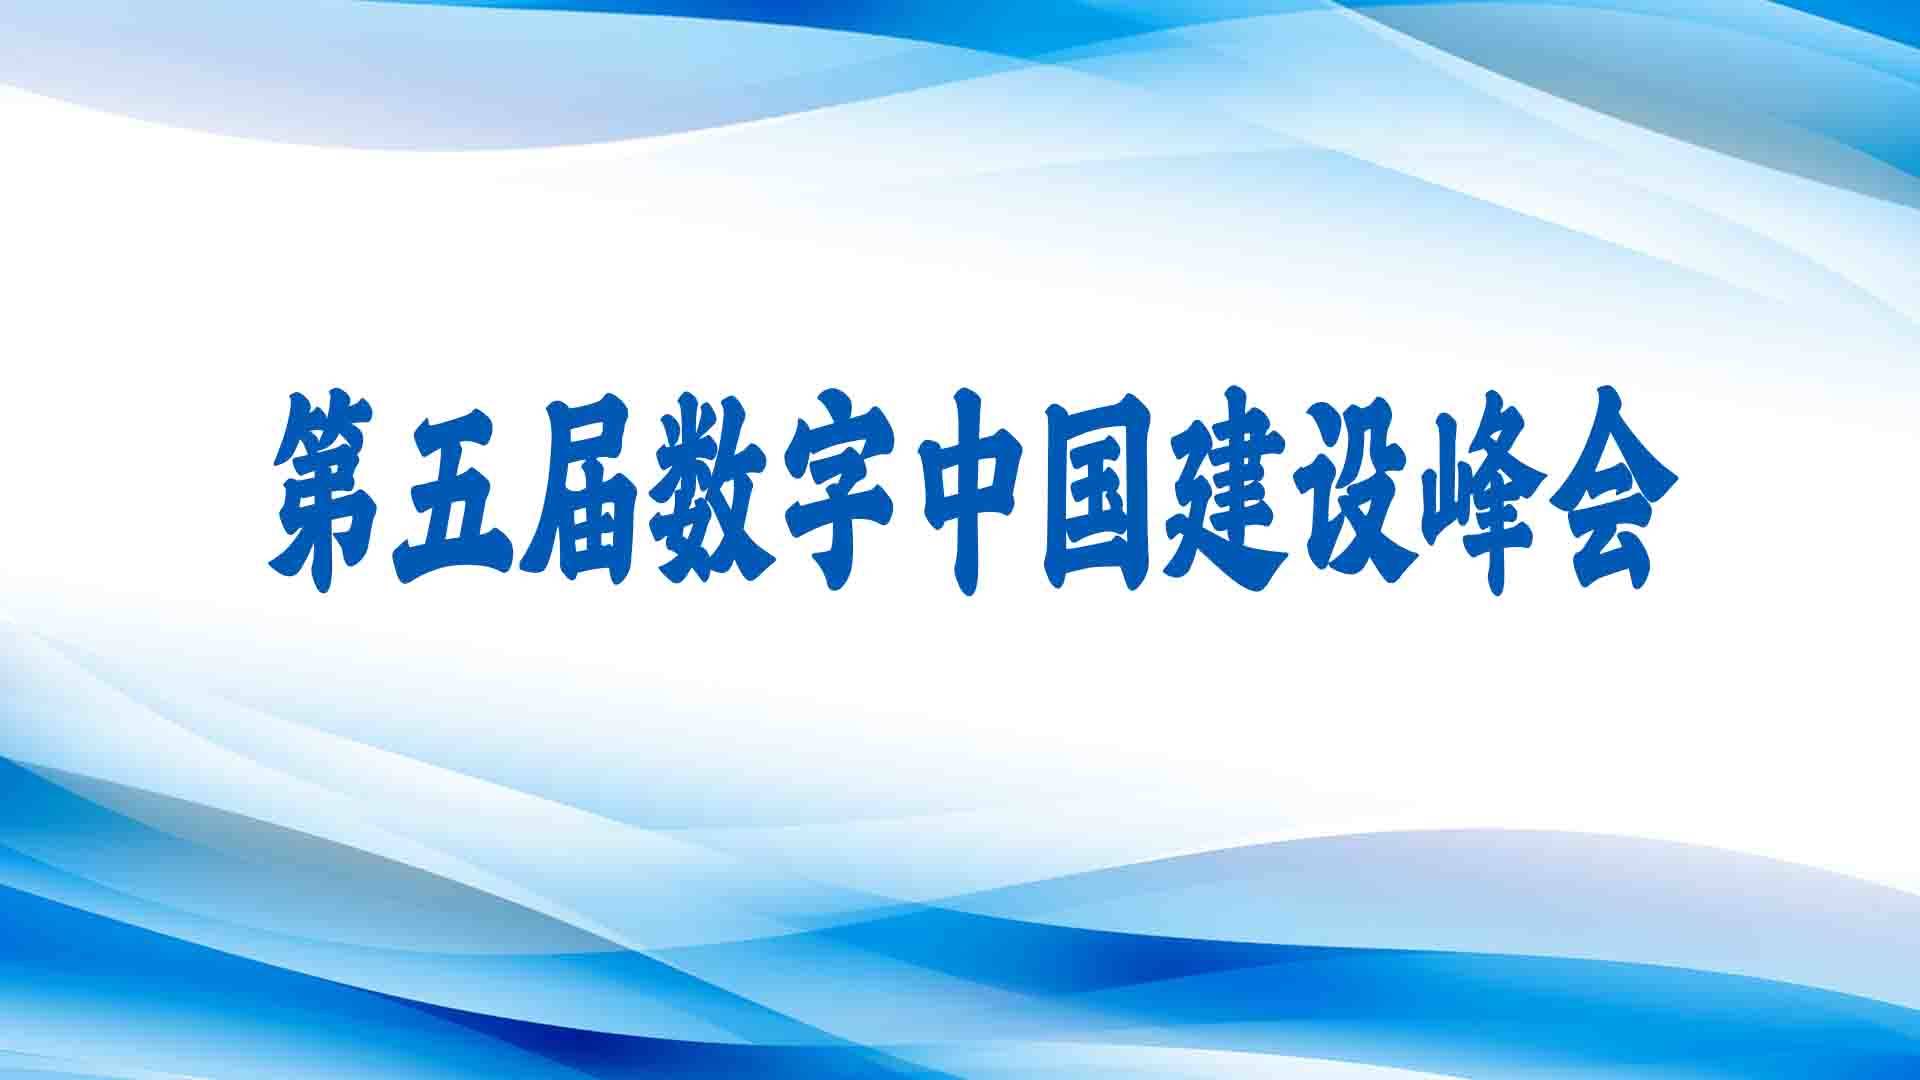 第五届数字中国建设峰会